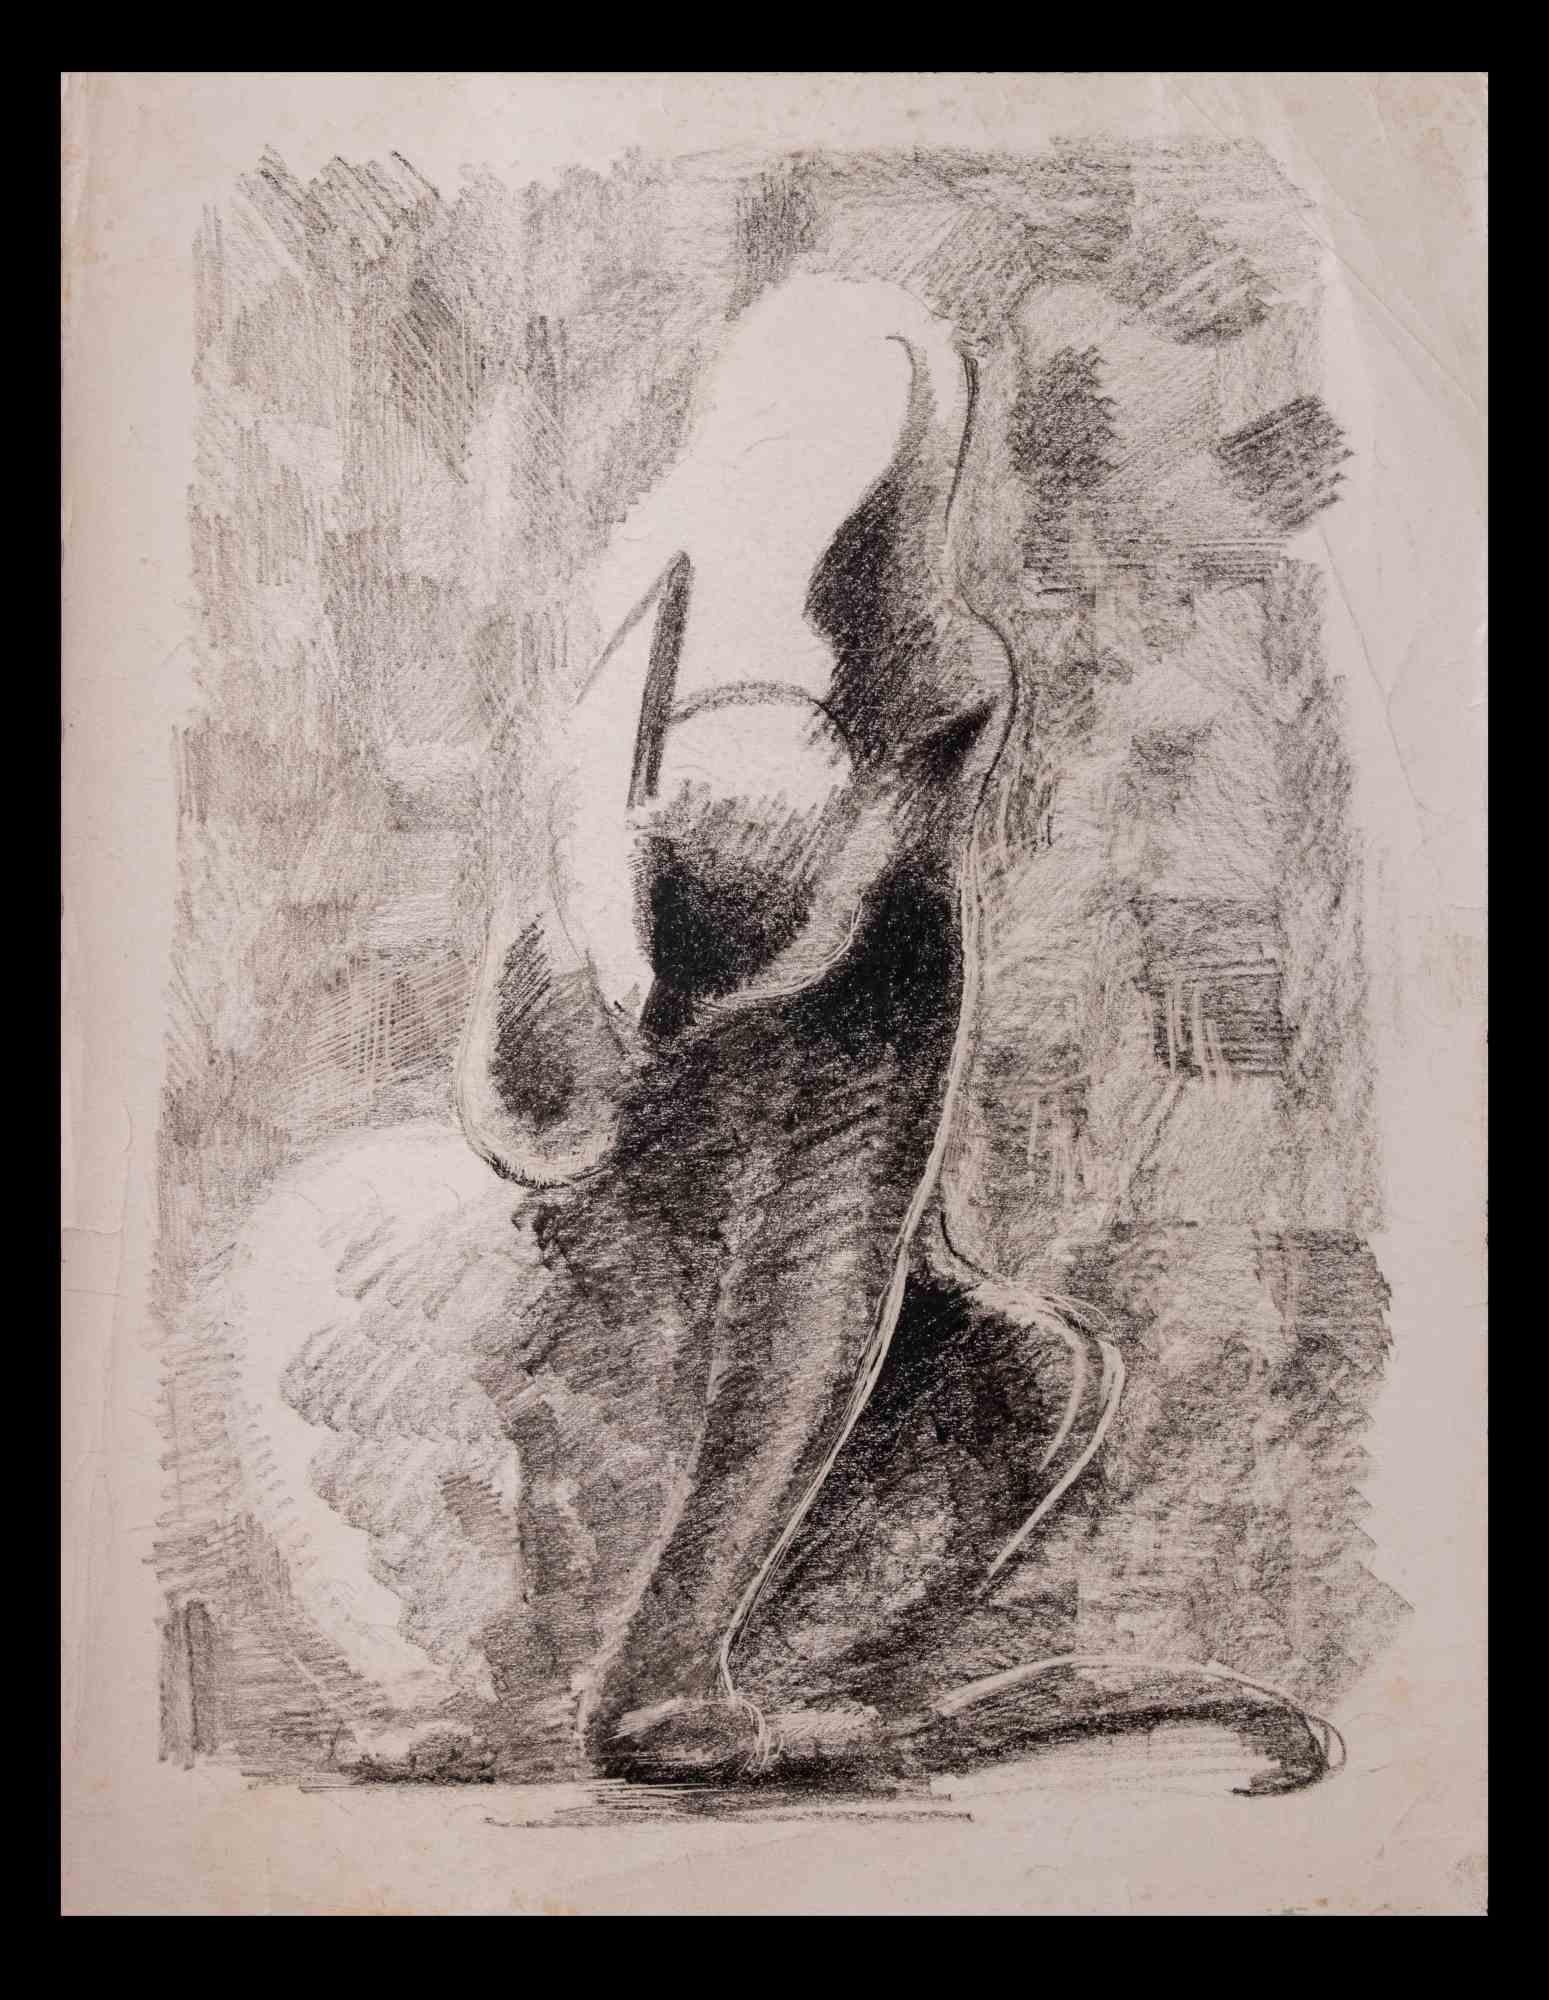 Chat est un dessin au fusain réalisé par Giselle Halff (1899-1971).

Bonnes conditions.

Giselle Halff (1899-1971) née à Hanoi, élève de R.X. Prinet, R. Ménard, L. Simon, B. Boutet de Monvel. Peintre et dessinateur d'animaux.